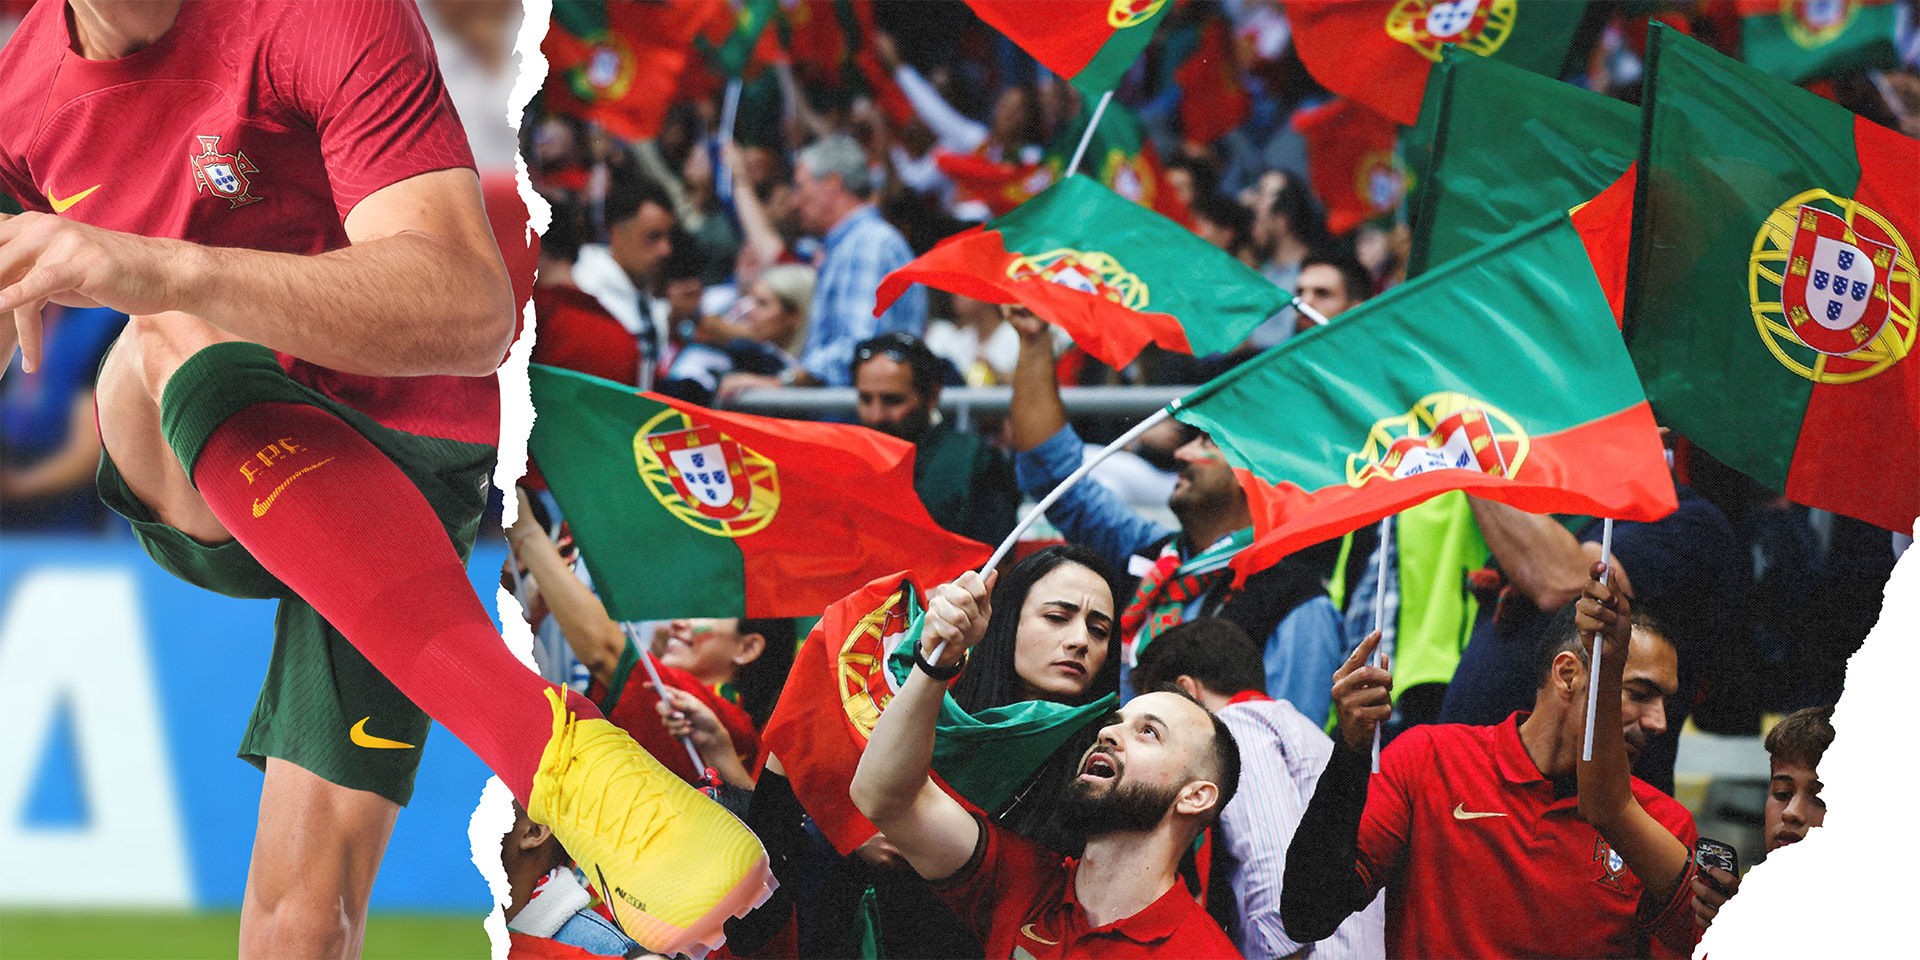 Treinadores portugueses continuam a conquistar títulos de futebol pelo  mundo fora